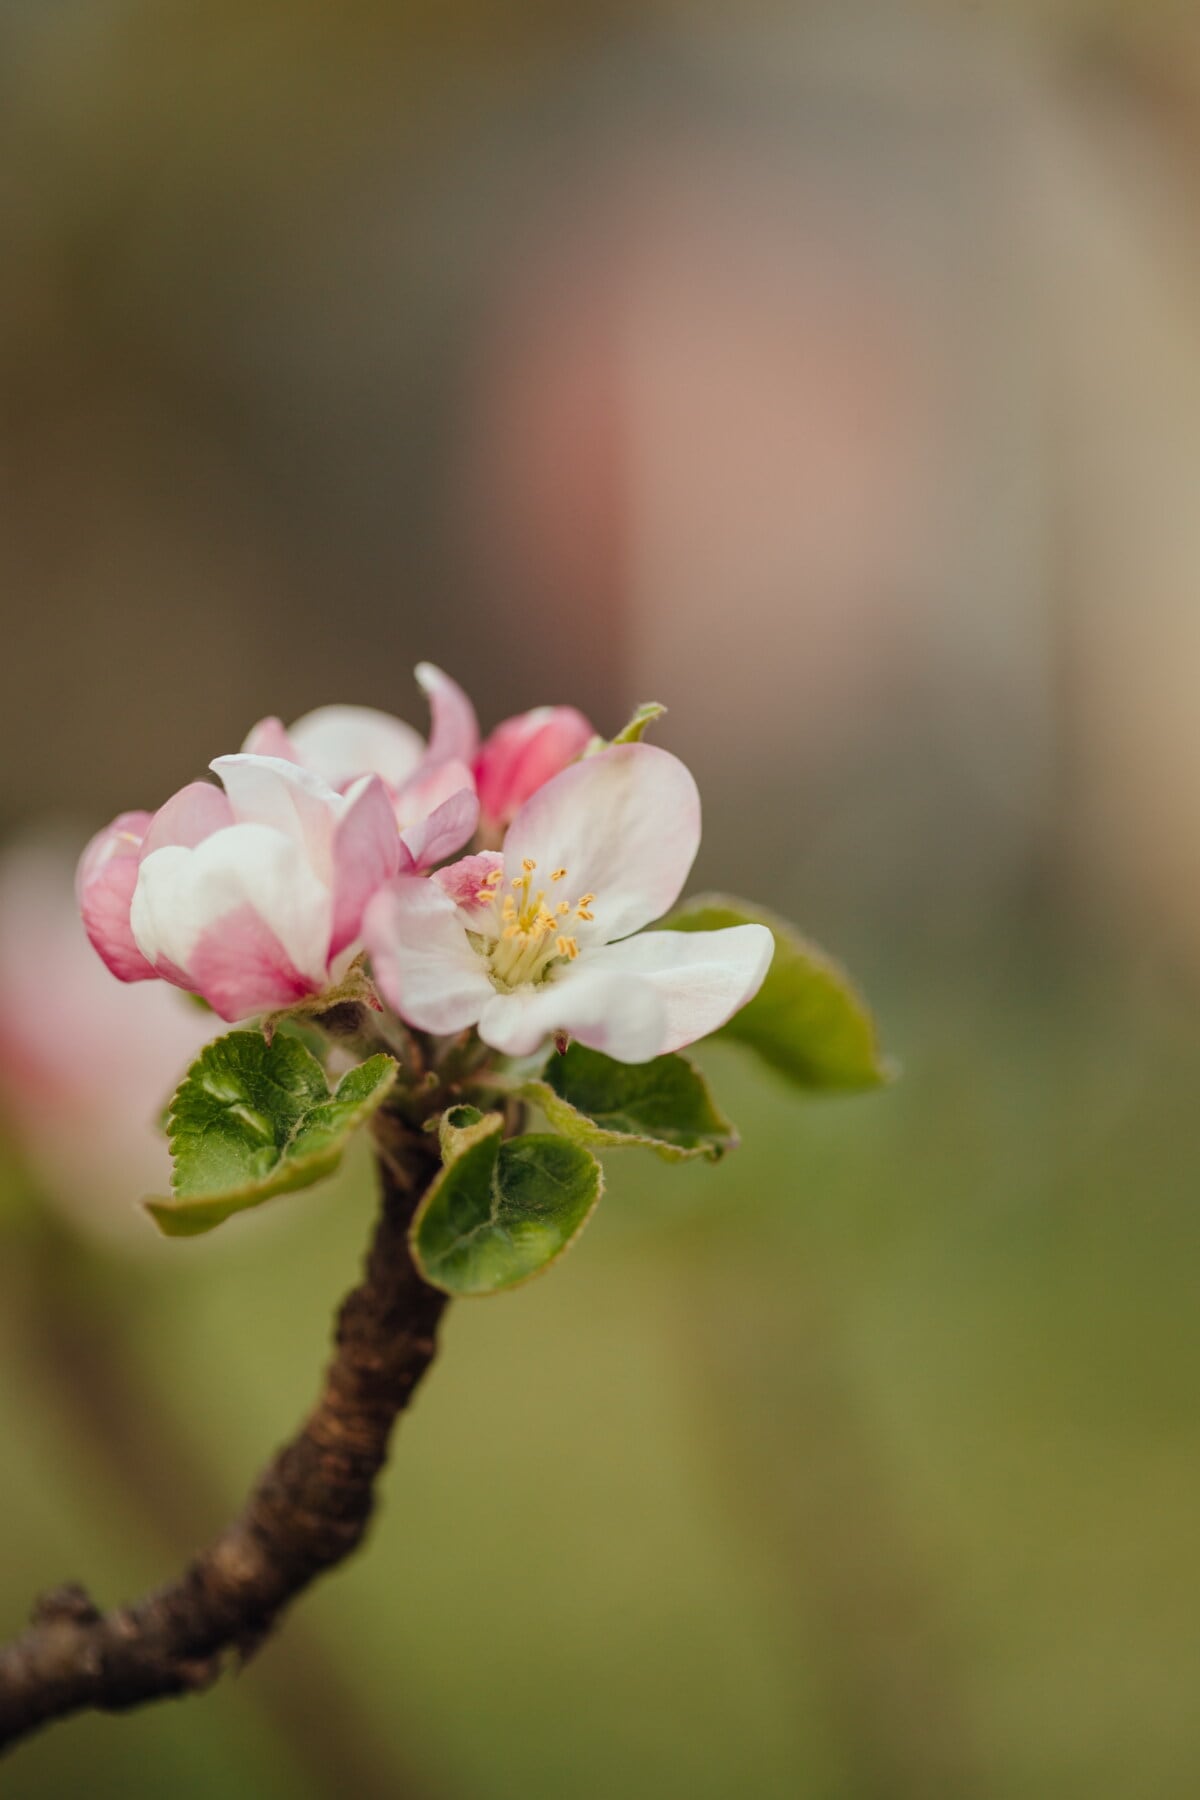 drvo jabuke, pelud, bijeli cvijet, proljetno vrijeme, izbliza, tučak, latica, zamagliti, jabuka, cvijet